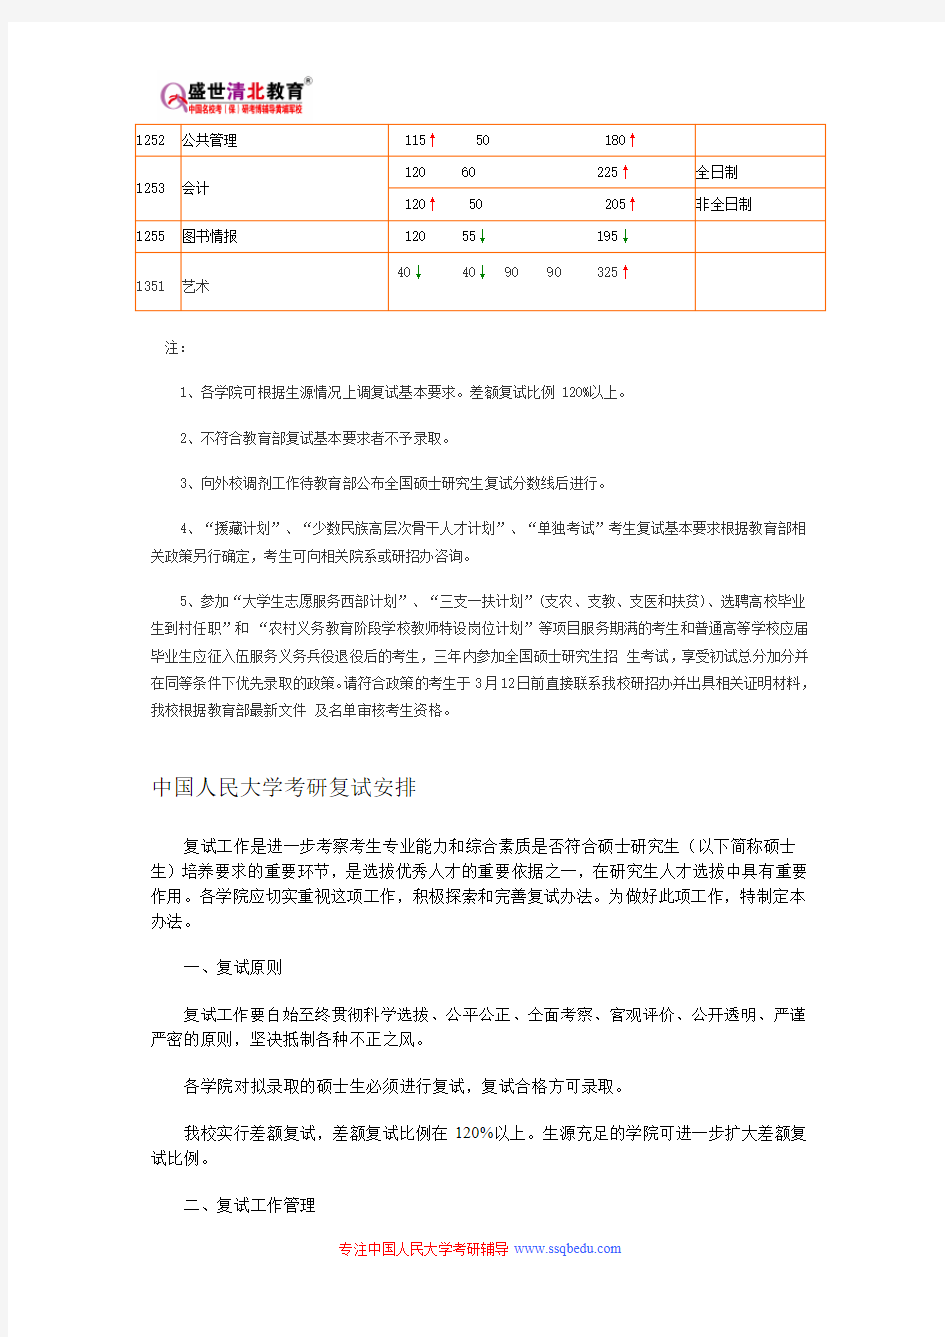 中国人民大学807-普通物理和普通化学考研参考书目、考研真题、复试分数线